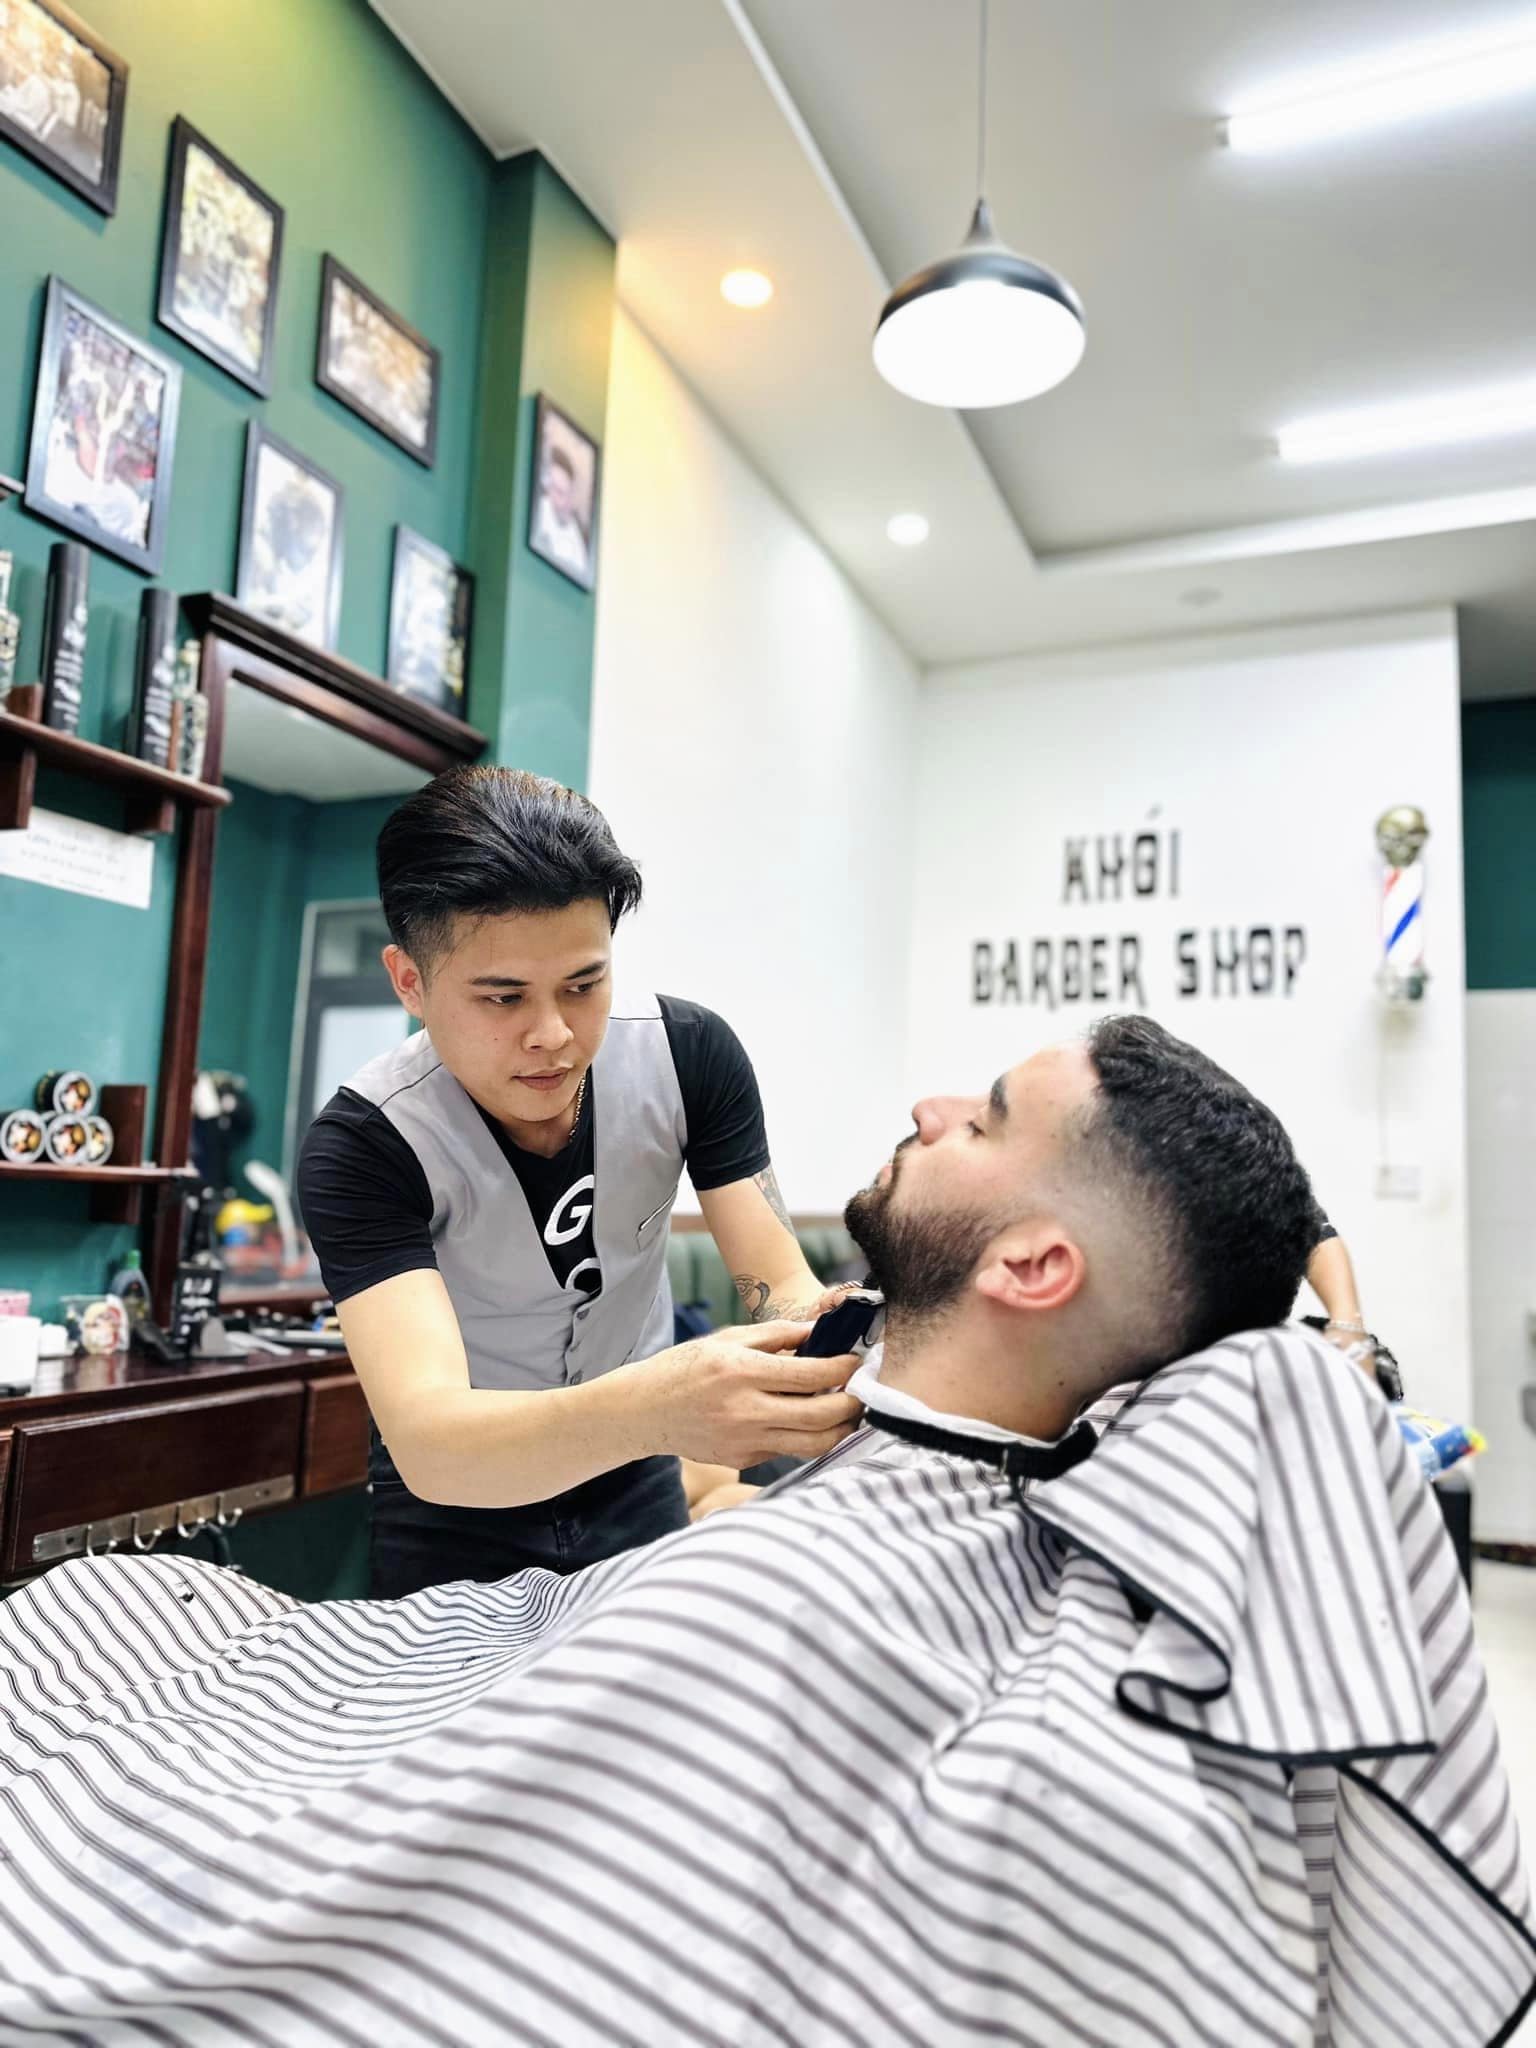 đơn vị Khói Barber Shop